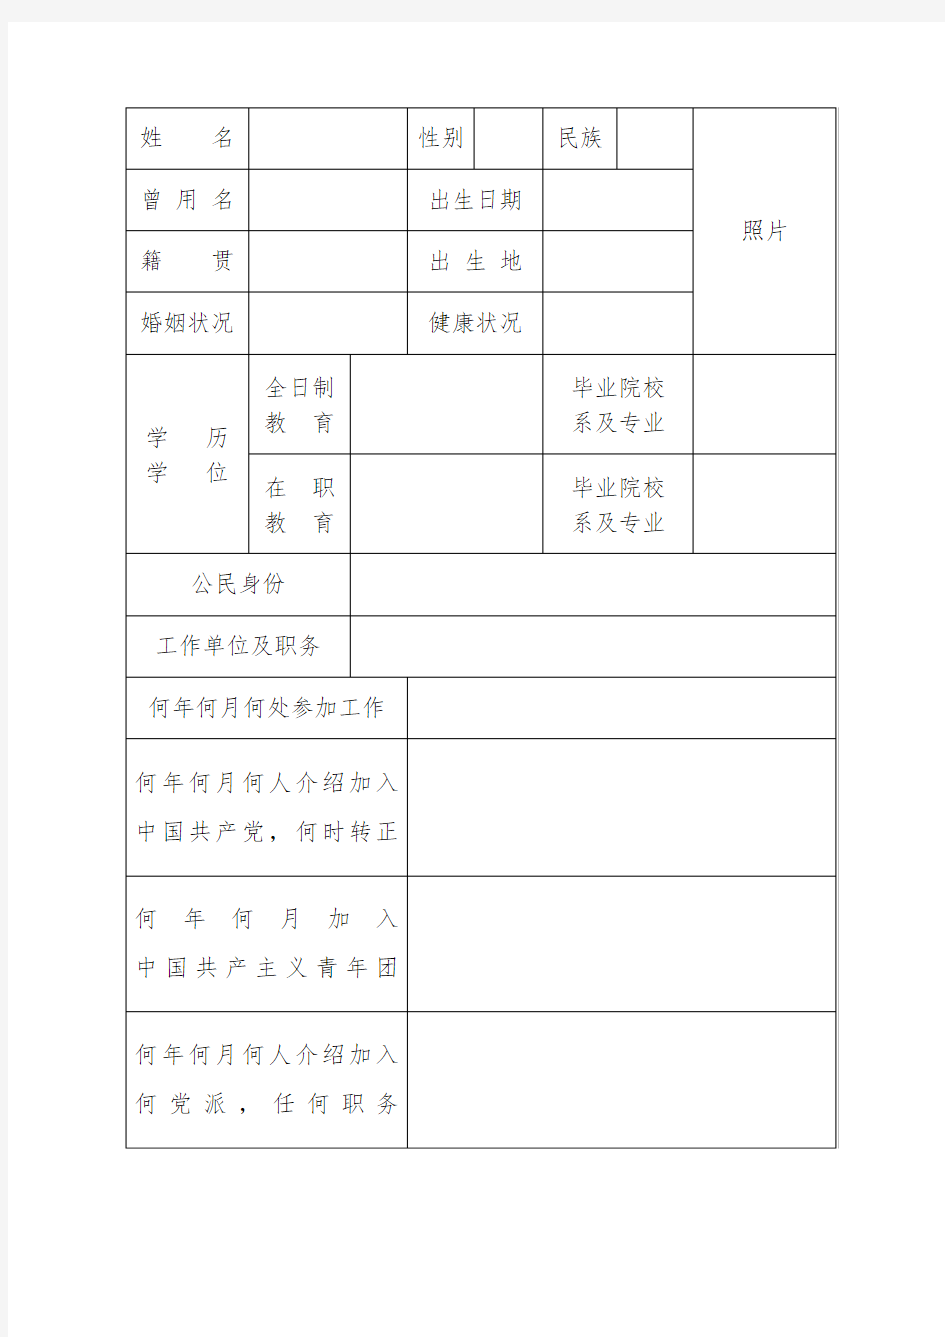 中组部2015年版干部履历表